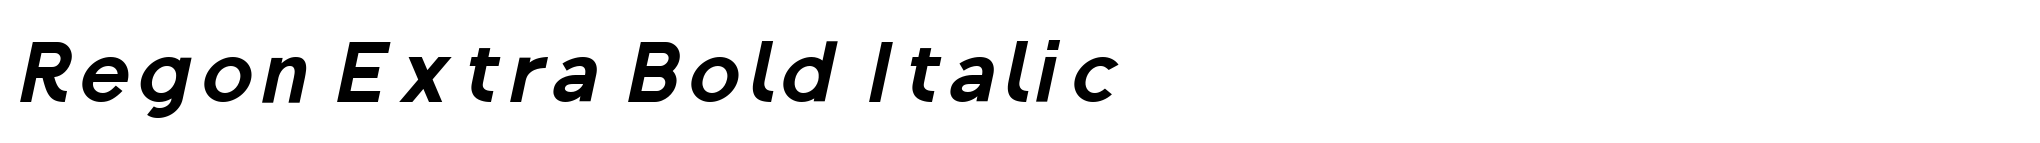 Regon Extra Bold Italic image